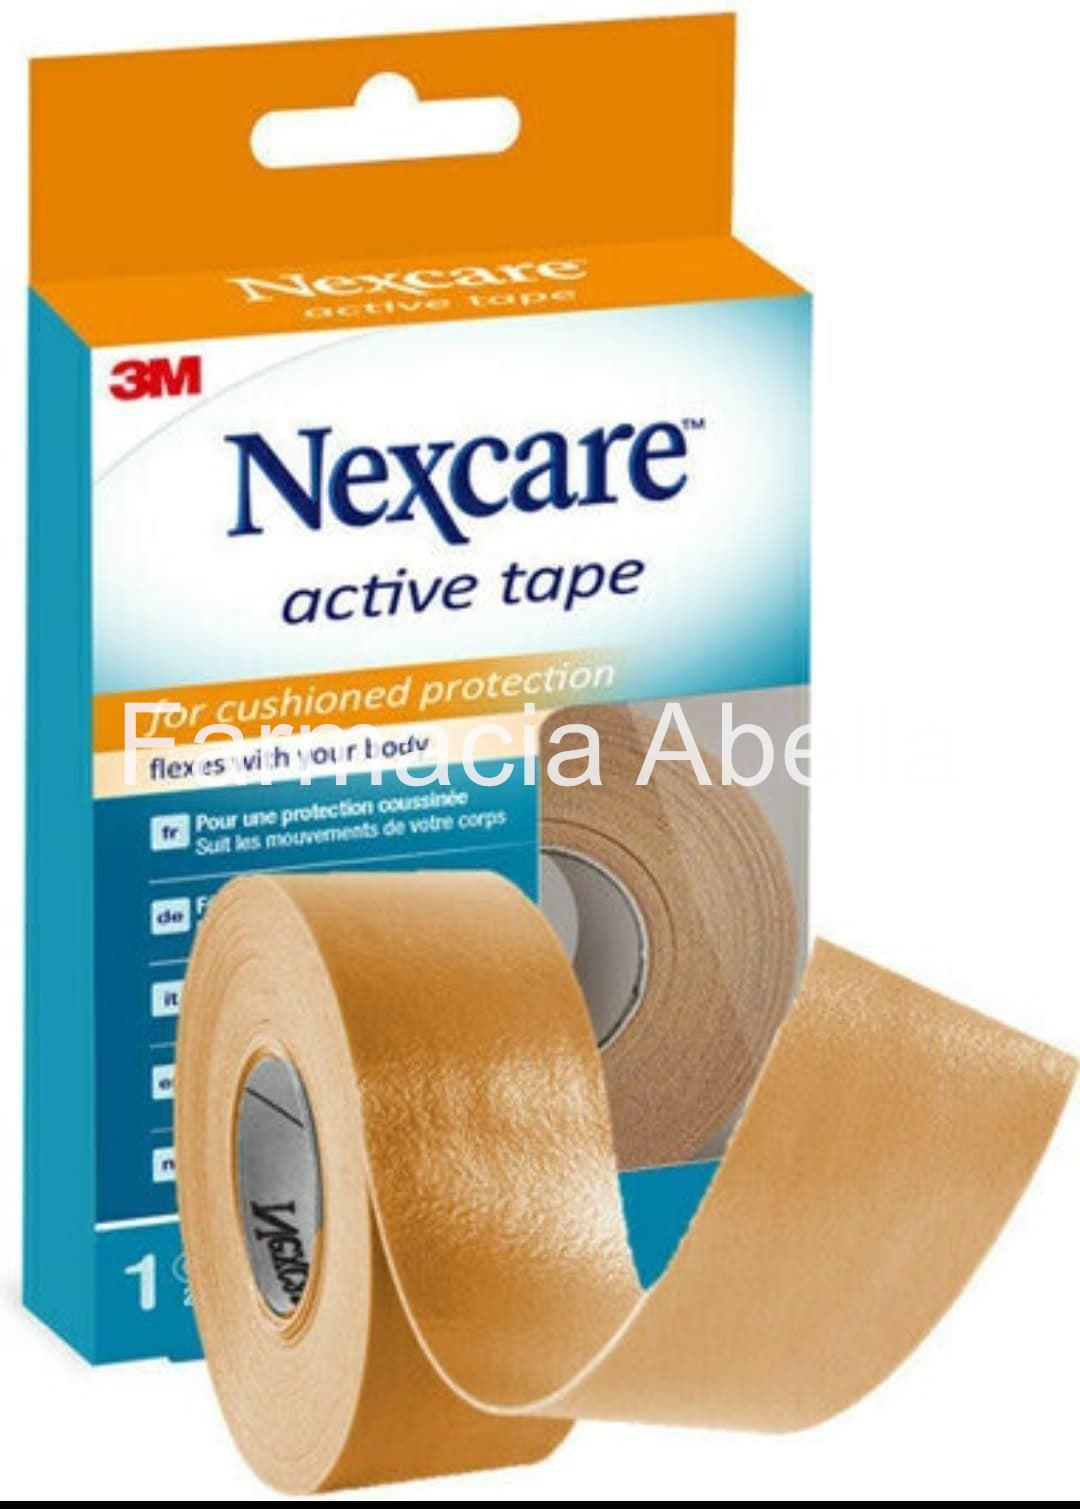 Nexcare active tape 3M (2,5 cm x 4,5 m) - Imagen 1